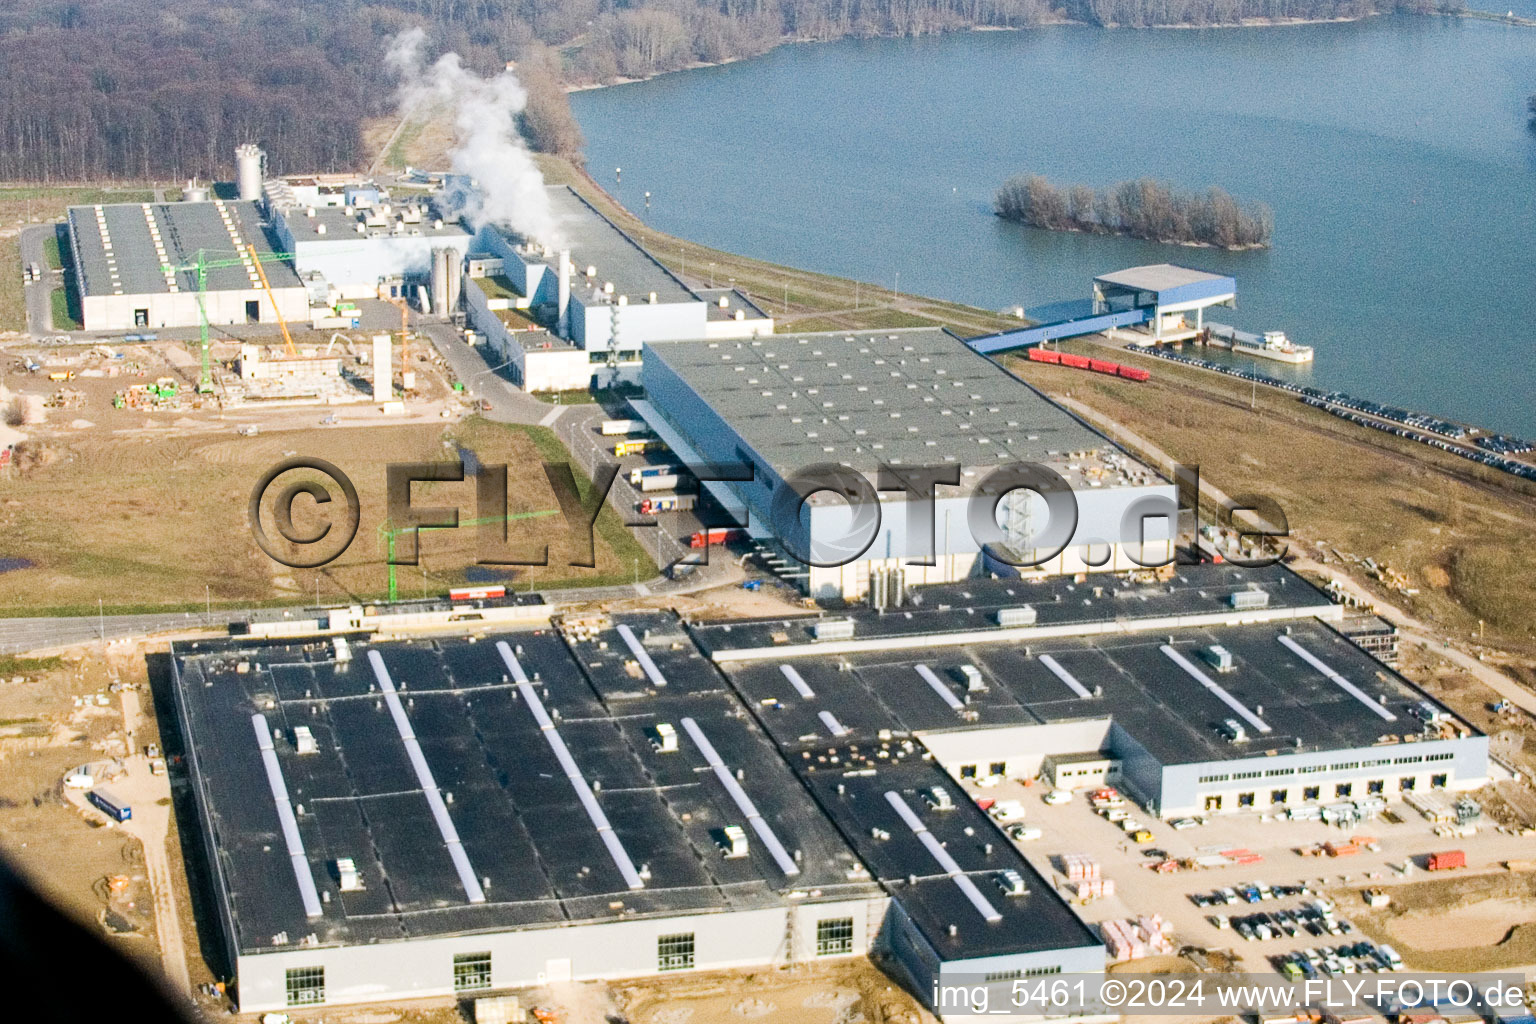 Luftbild von Wellpappenfabrik Palm in Wörth am Rhein im Bundesland Rheinland-Pfalz, Deutschland